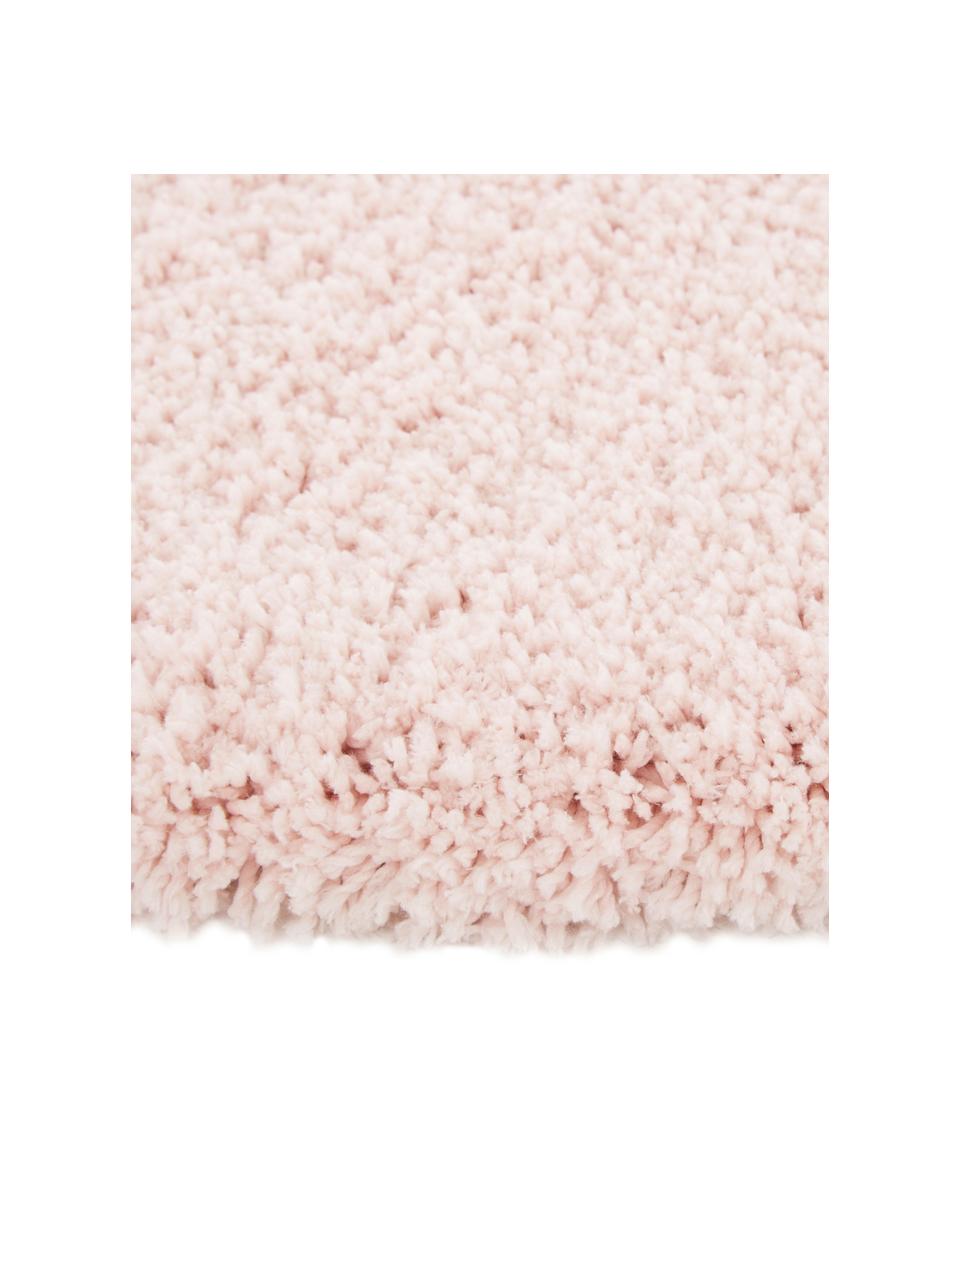 Flauschiger runder Hochflor-Teppich Leighton in Rosa, Flor: Mikrofaser (100% Polyeste, Rosa, Ø 200 cm (Größe L)